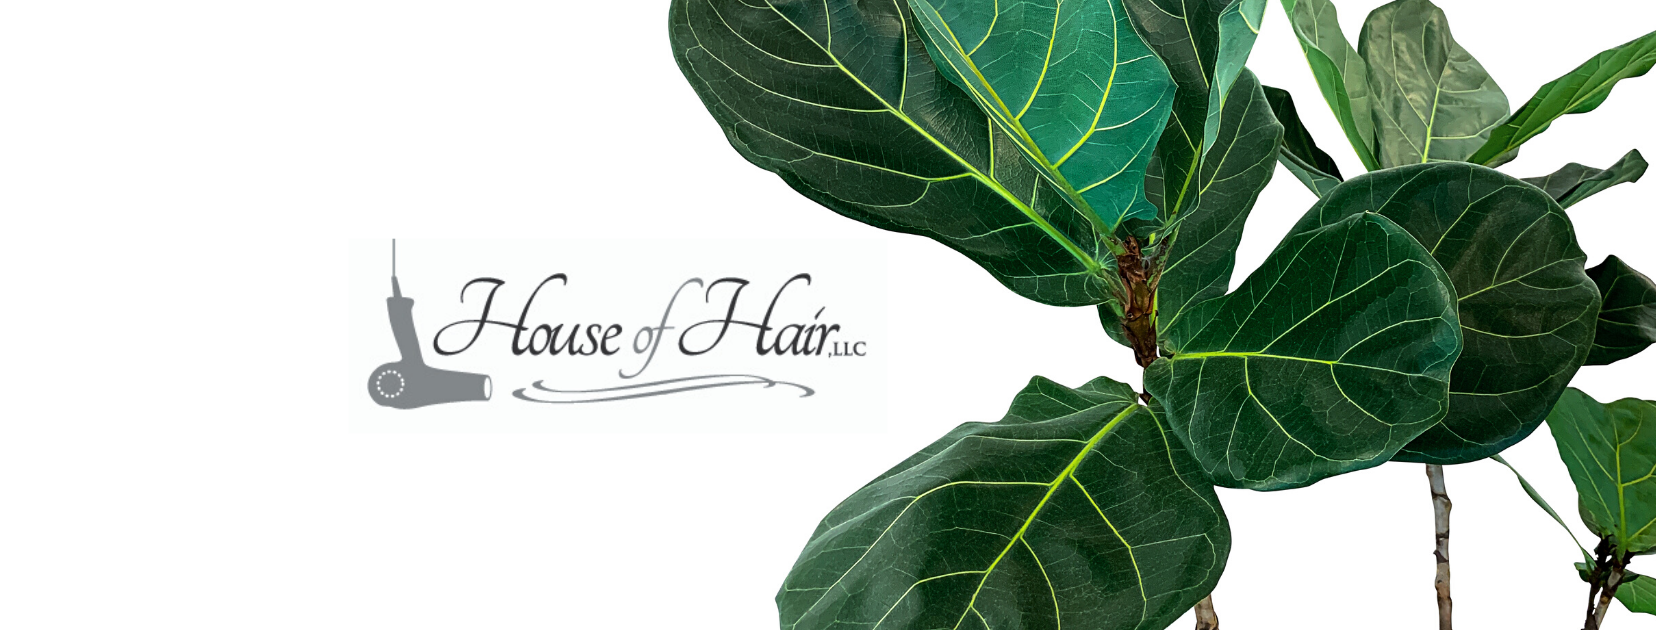 House of Hair, LLC